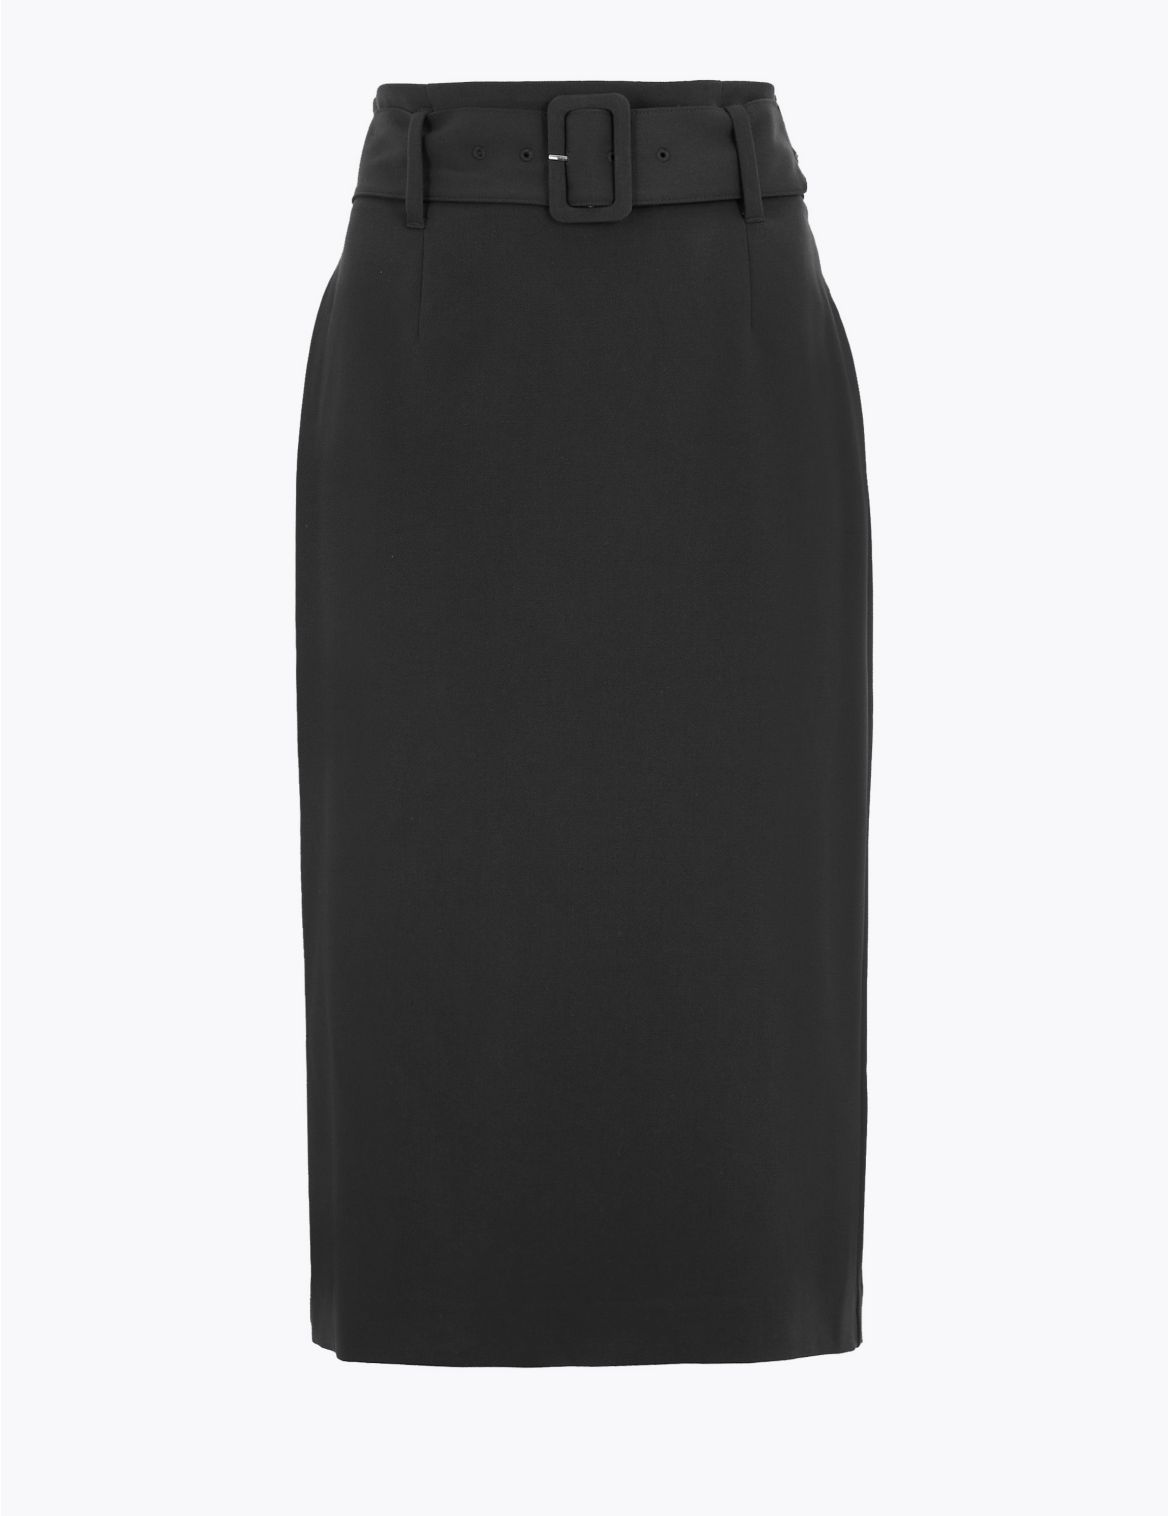 Belted Knee Length Pencil Skirt black